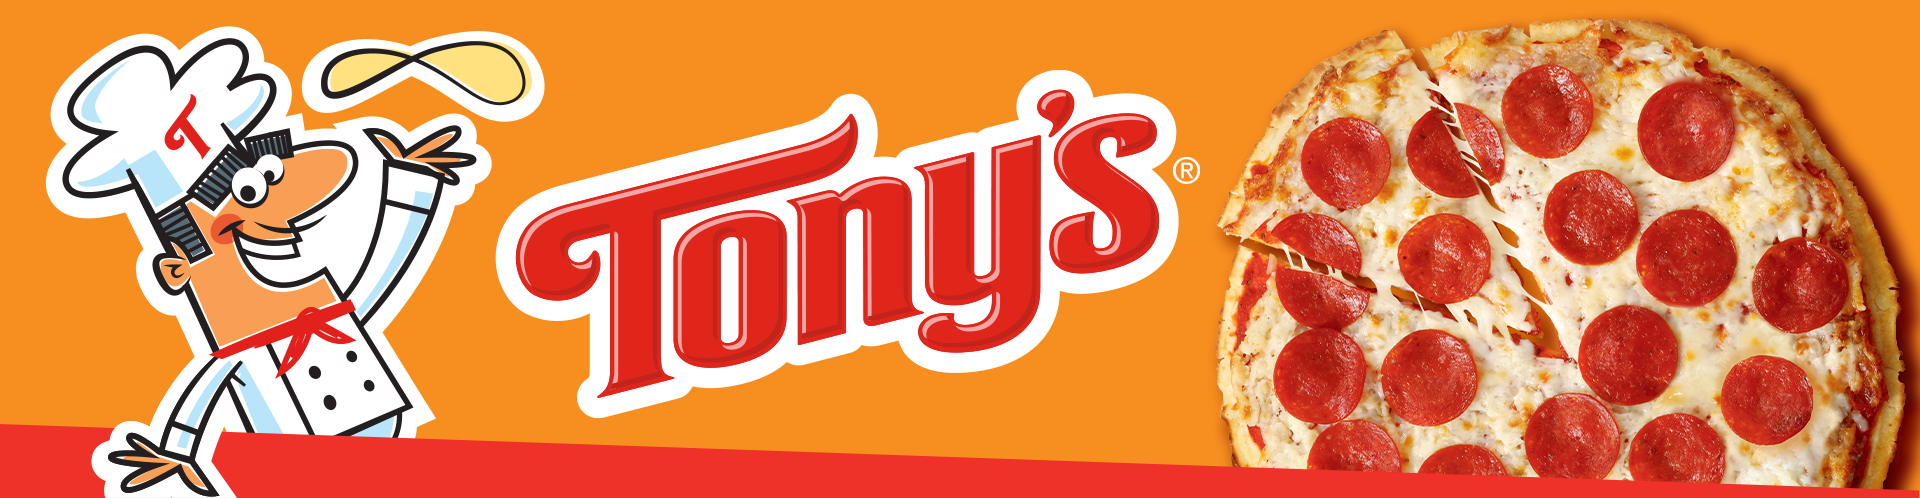 TONY'S® Pizza